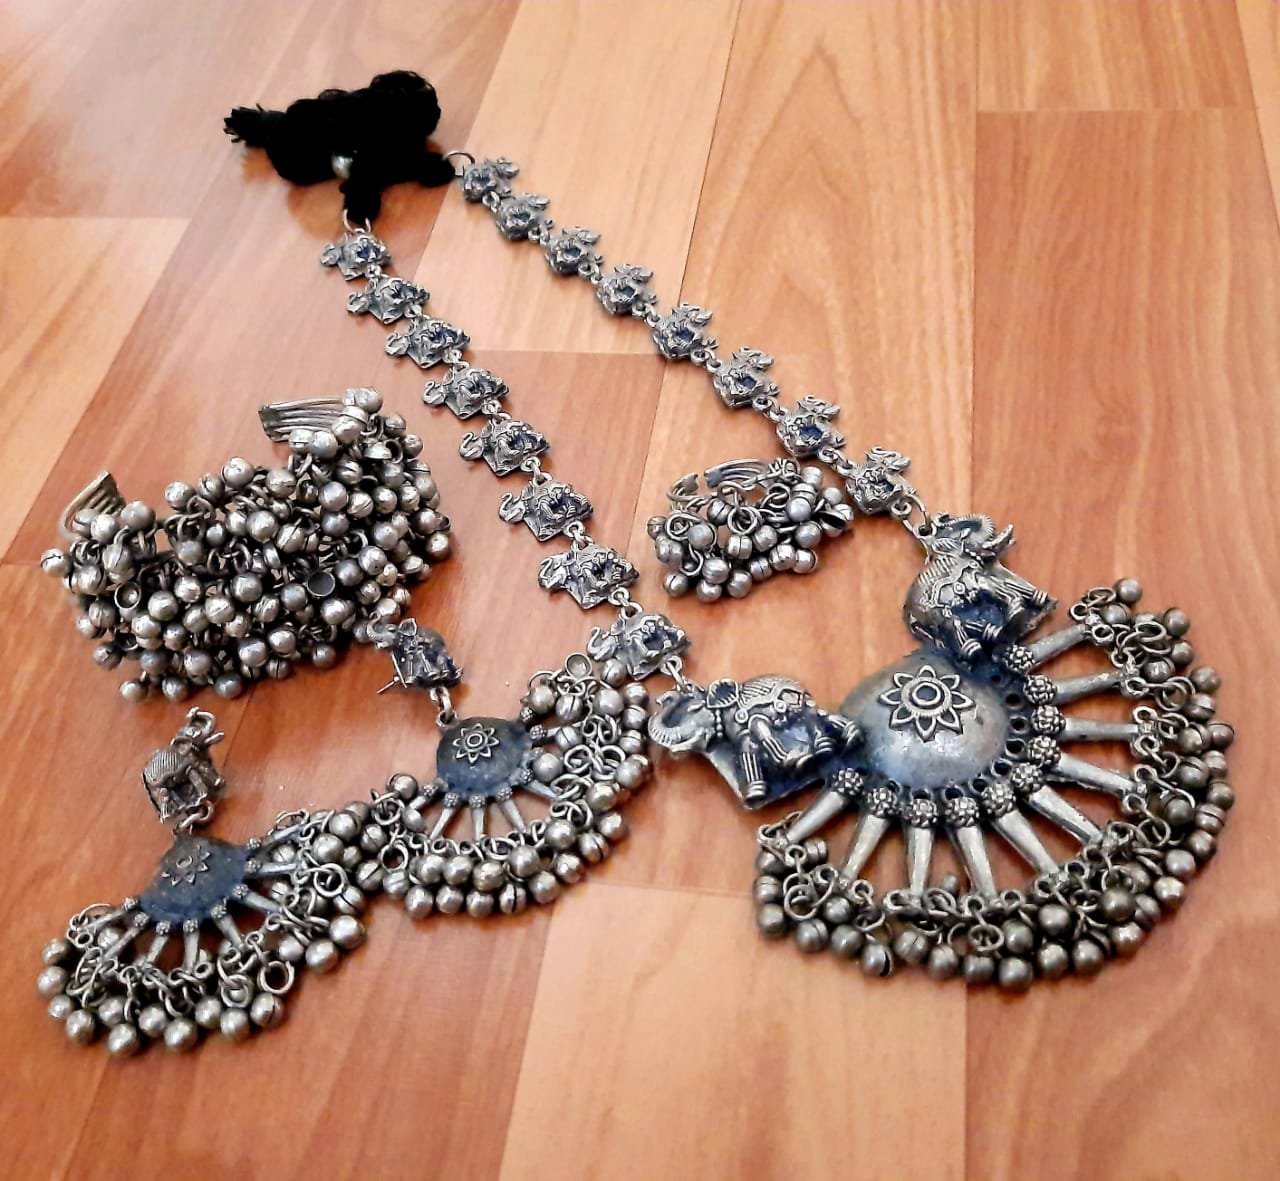 German Silver Oxidized Metal Antique Black Metal Finish Unique Elephant Pendant Gungru Combo Necklace Set